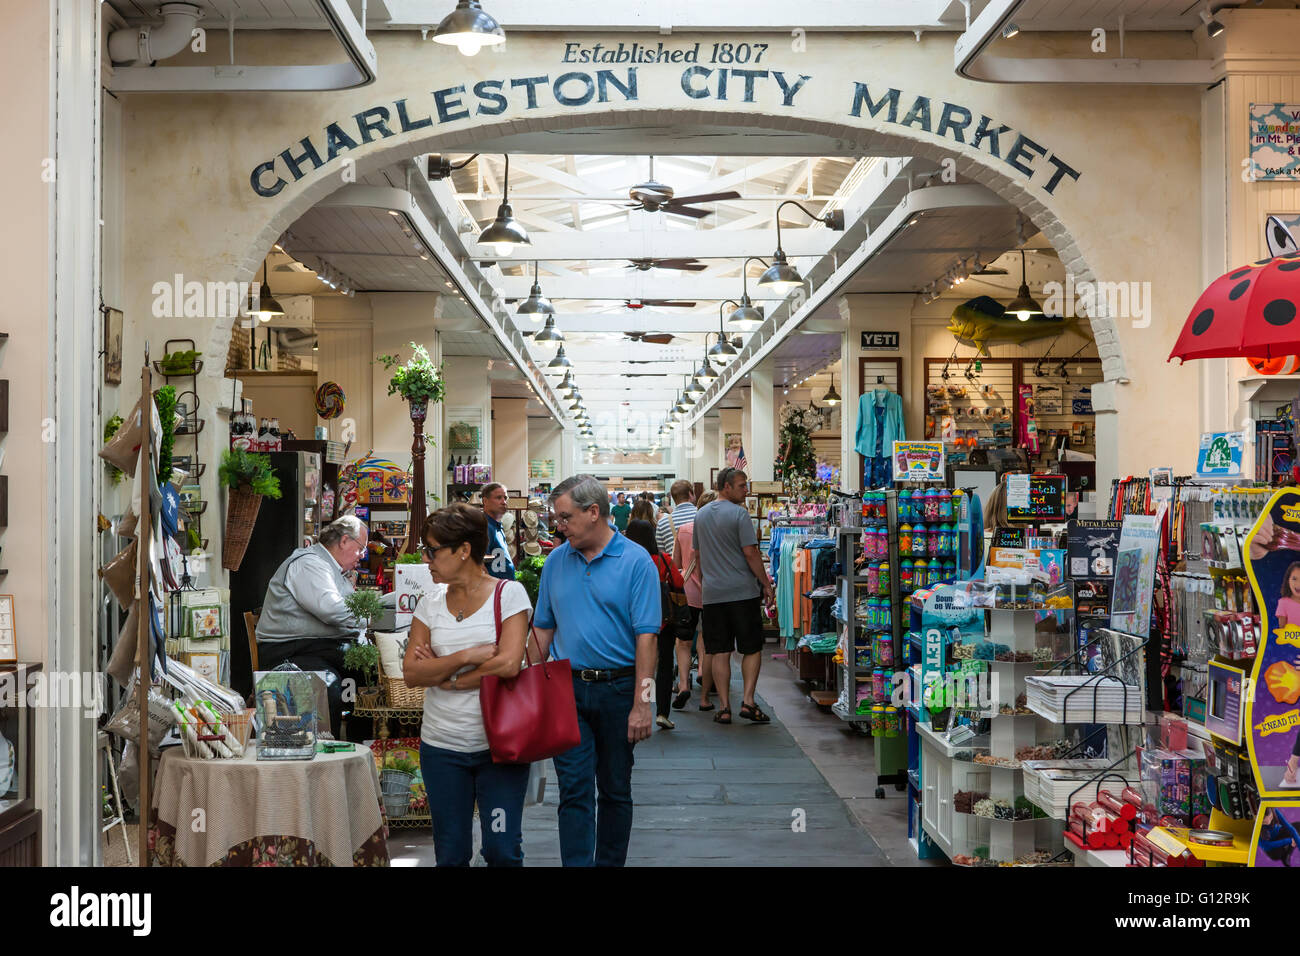 Les touristes et les visiteurs de parcourir dans le quartier historique de Charleston City Market à Charleston, Caroline du Sud. Banque D'Images